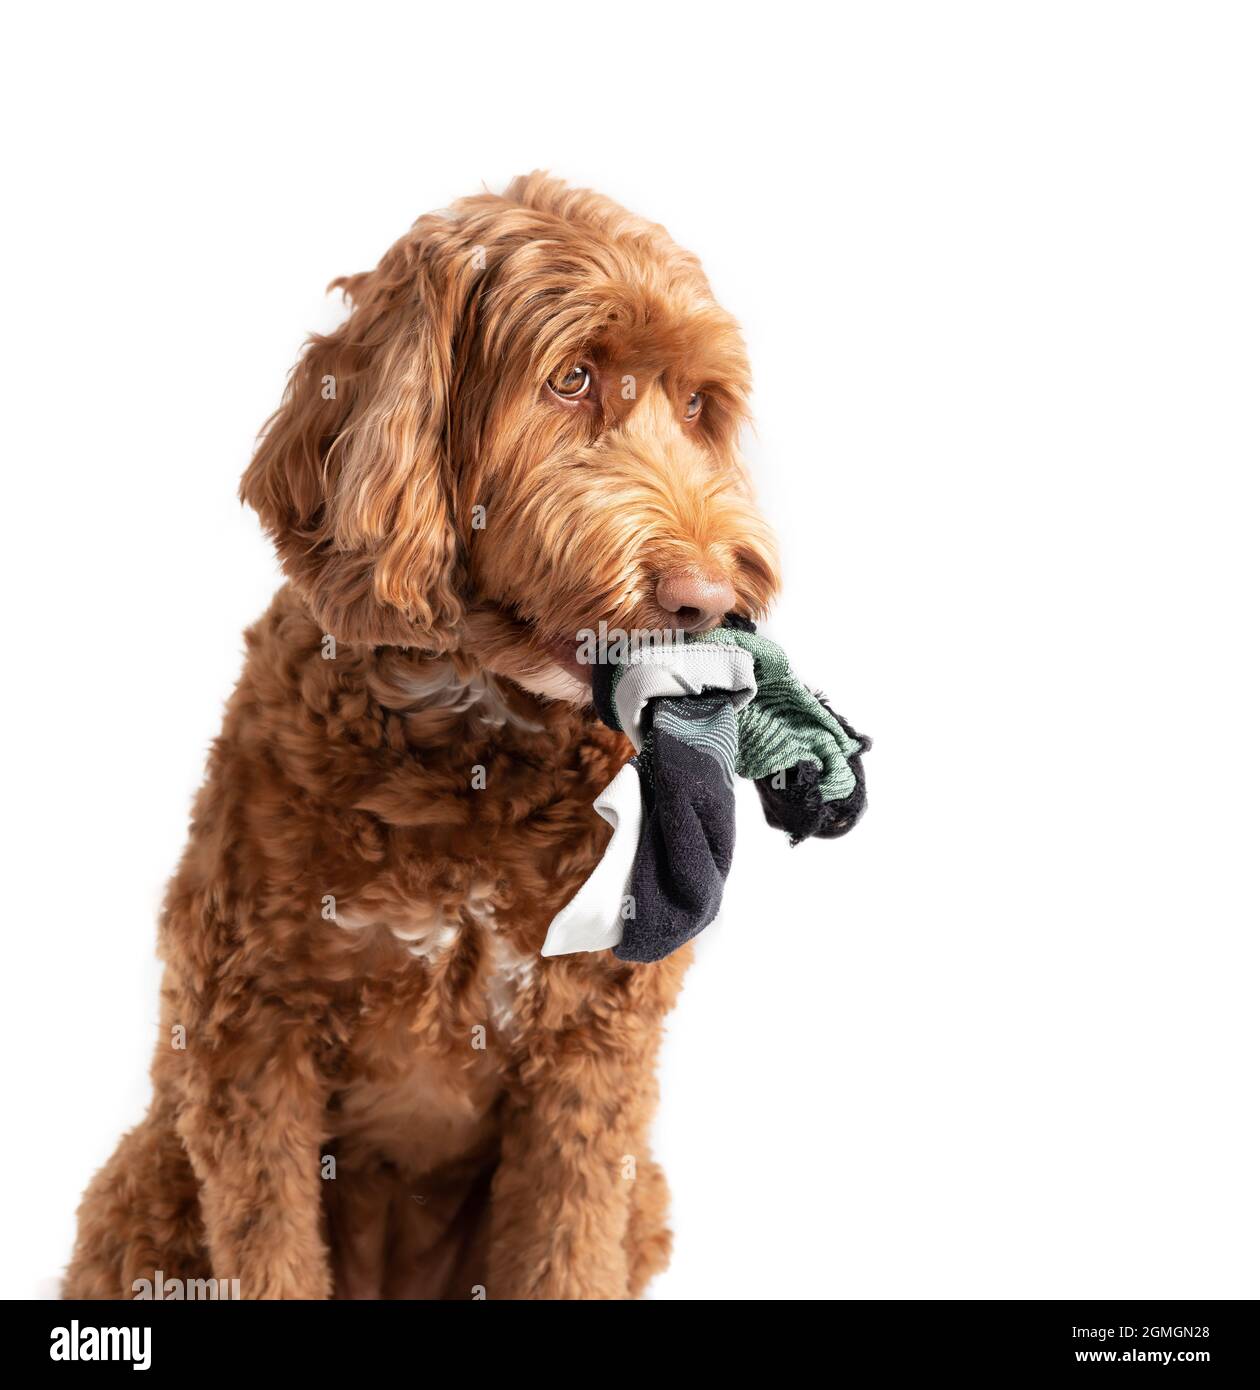 Labradoodle Hund mit Socken aus dem Mund hängen. Seitenprofil von niedlichen unschuldigen suchen Hündin. Konzept, warum Hunde Socken essen, kauen oder stehlen. Stockfoto